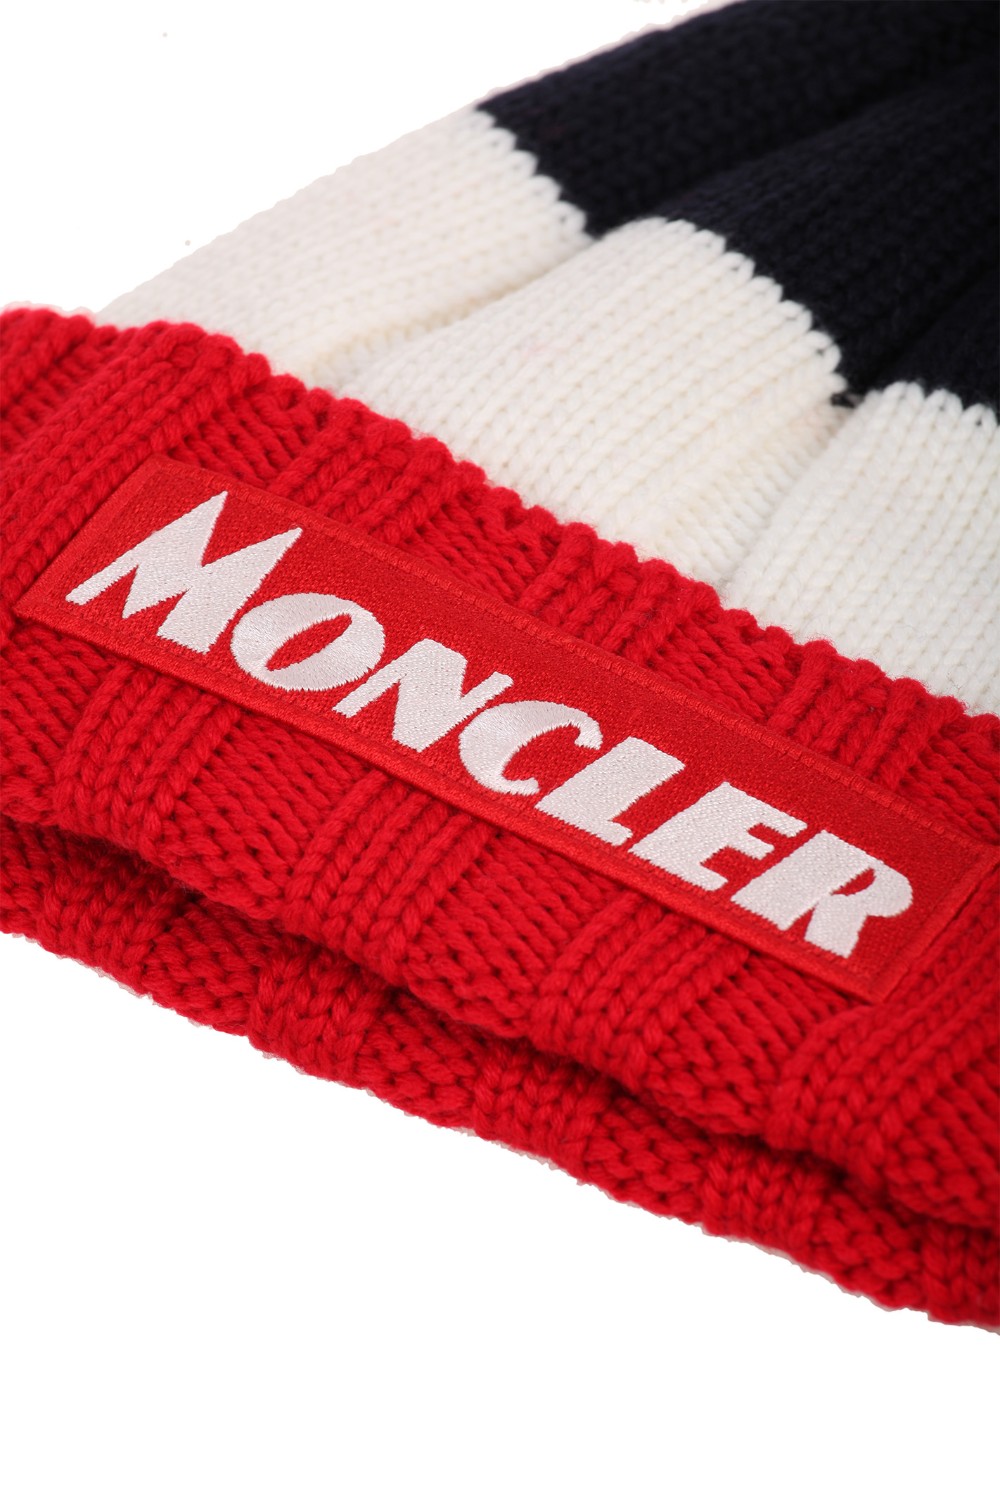 shop MONCLER Saldi Cappello: Moncler cappello tricot con pon-pon.
Applicazione scritta Moncler sulla fronte.
Motivo tricolore.
Composizione: 100% lana vergine.. 99257 00 A9090-455 number 5017054